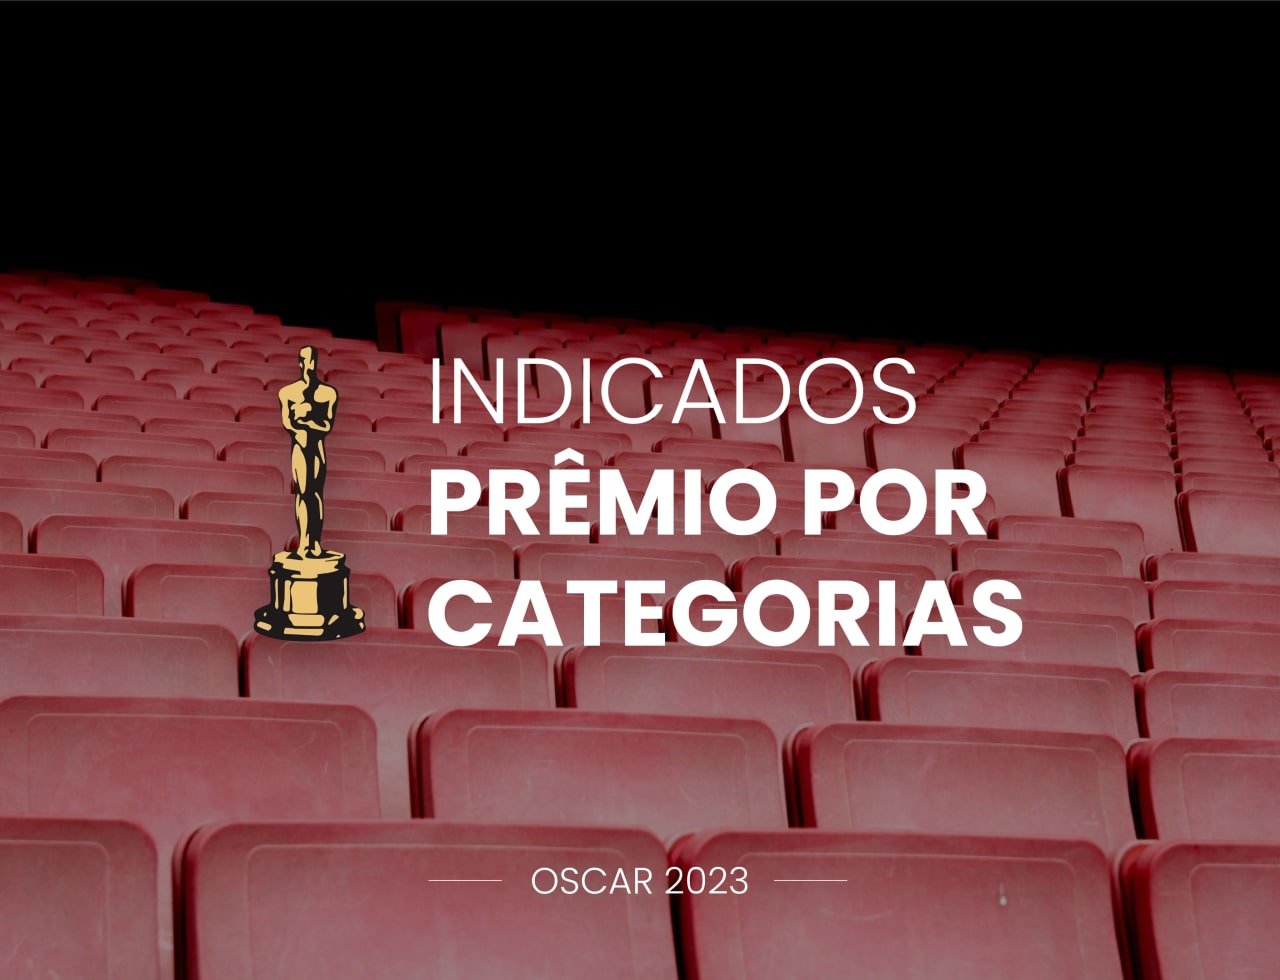 Indicados ao Oscar 2023: Prêmio por Categorias